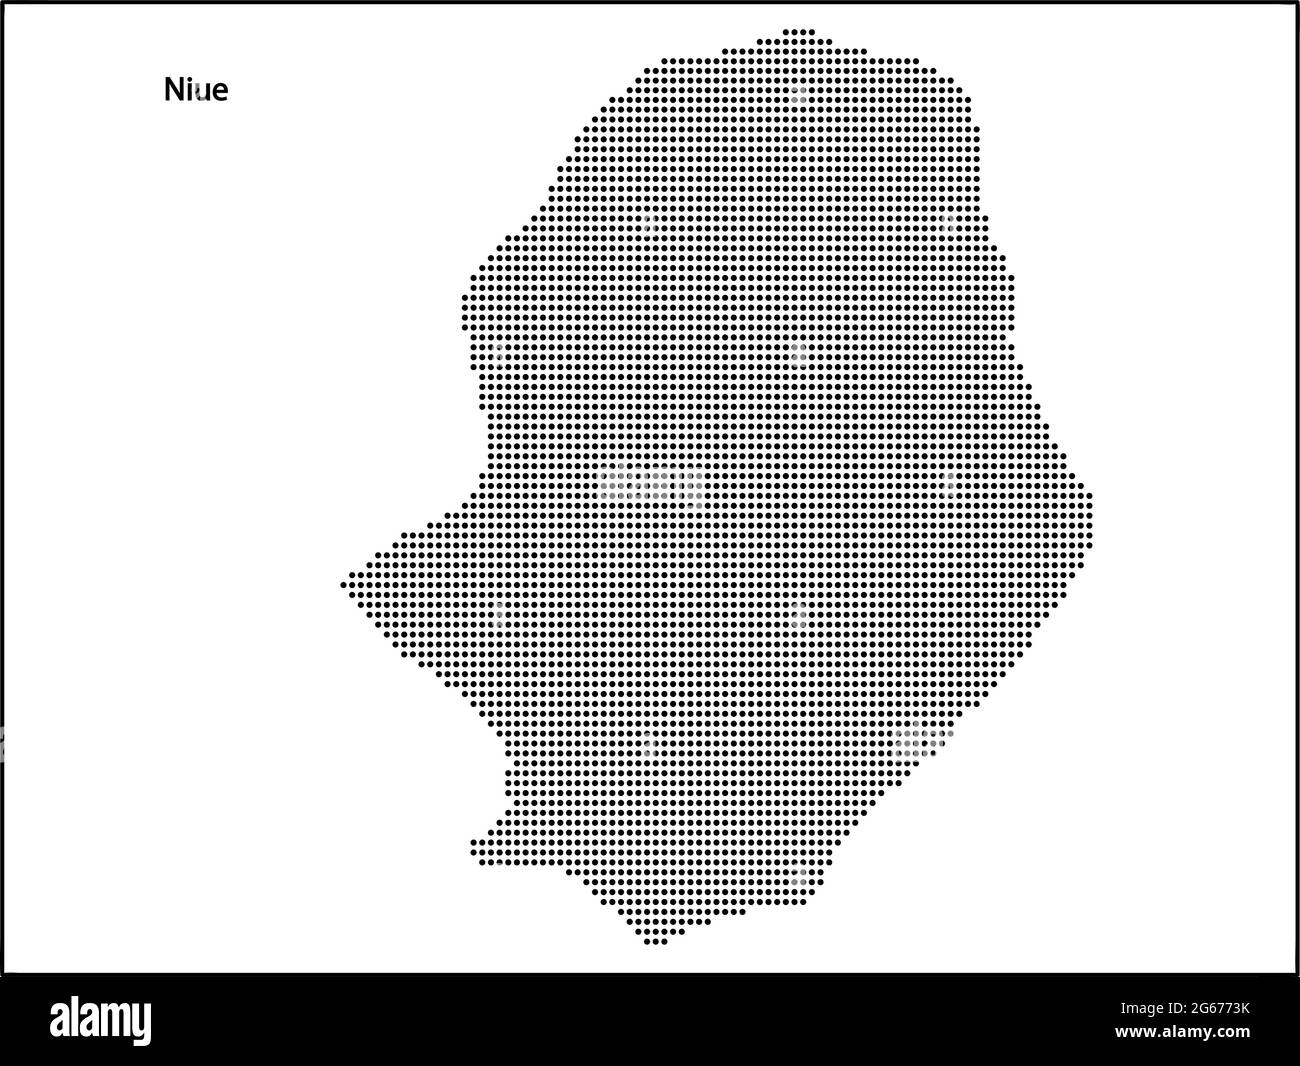 Mappa vettoriale a mezzitoni punteggiata del paese Niue per il tuo progetto, concetto di illustrazione di viaggio. Illustrazione Vettoriale